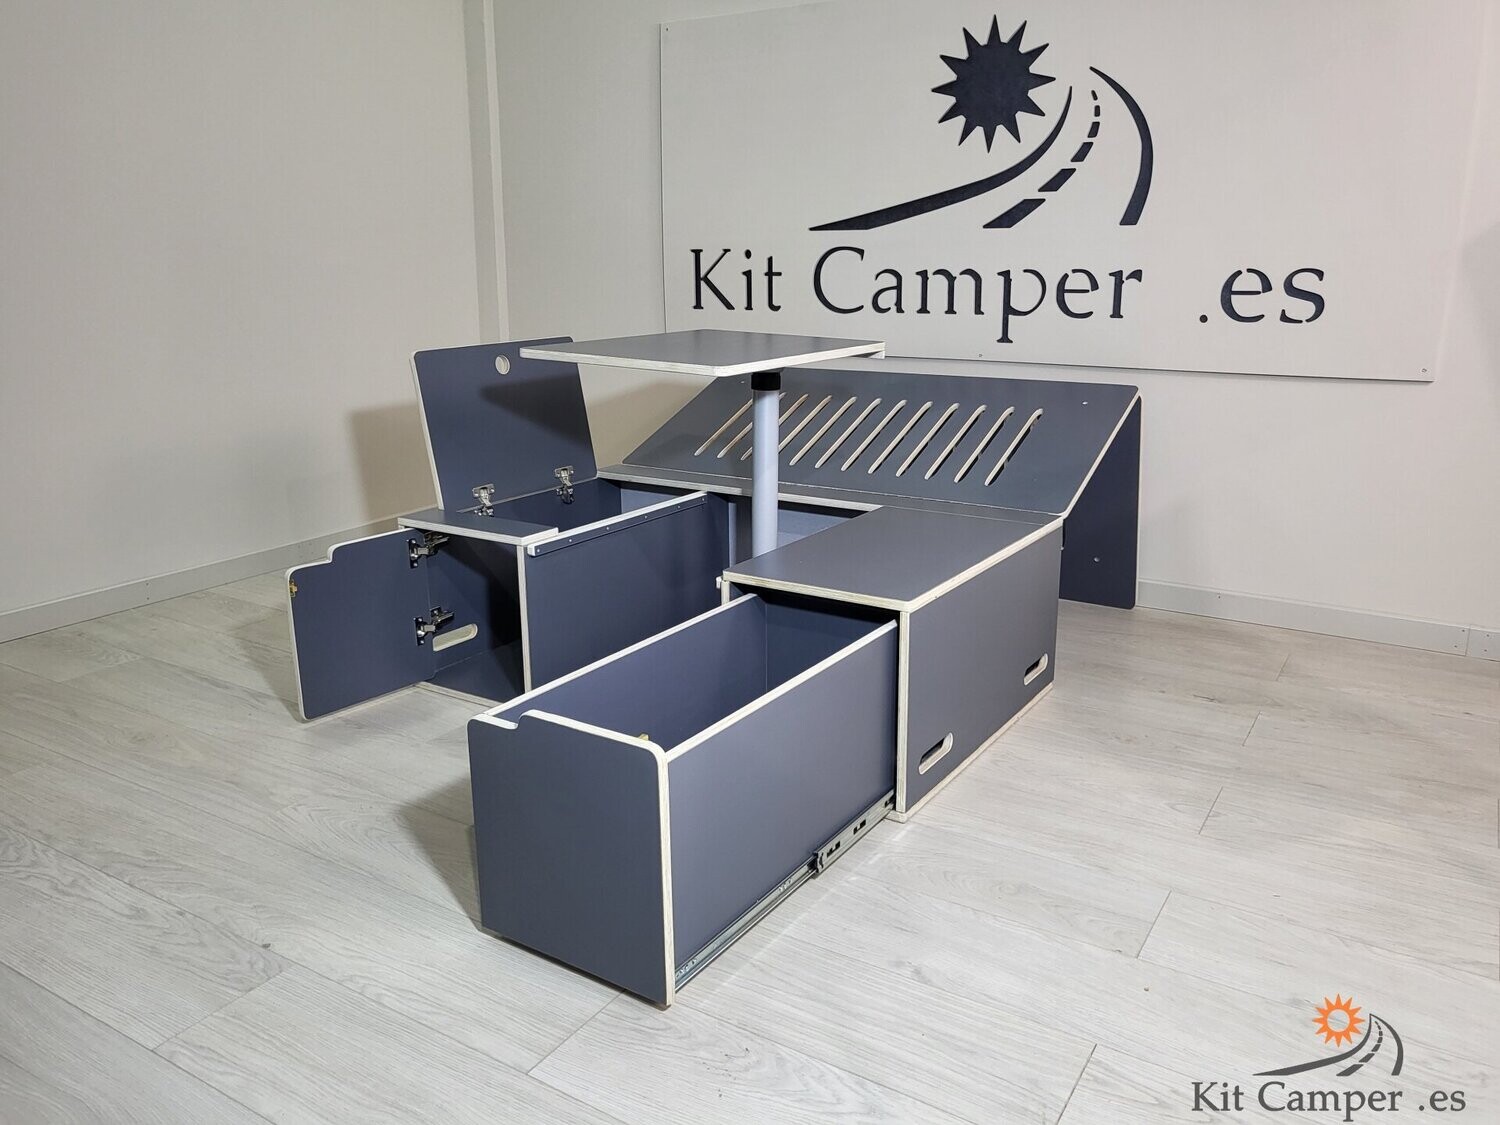 Kit Camper Simply 1